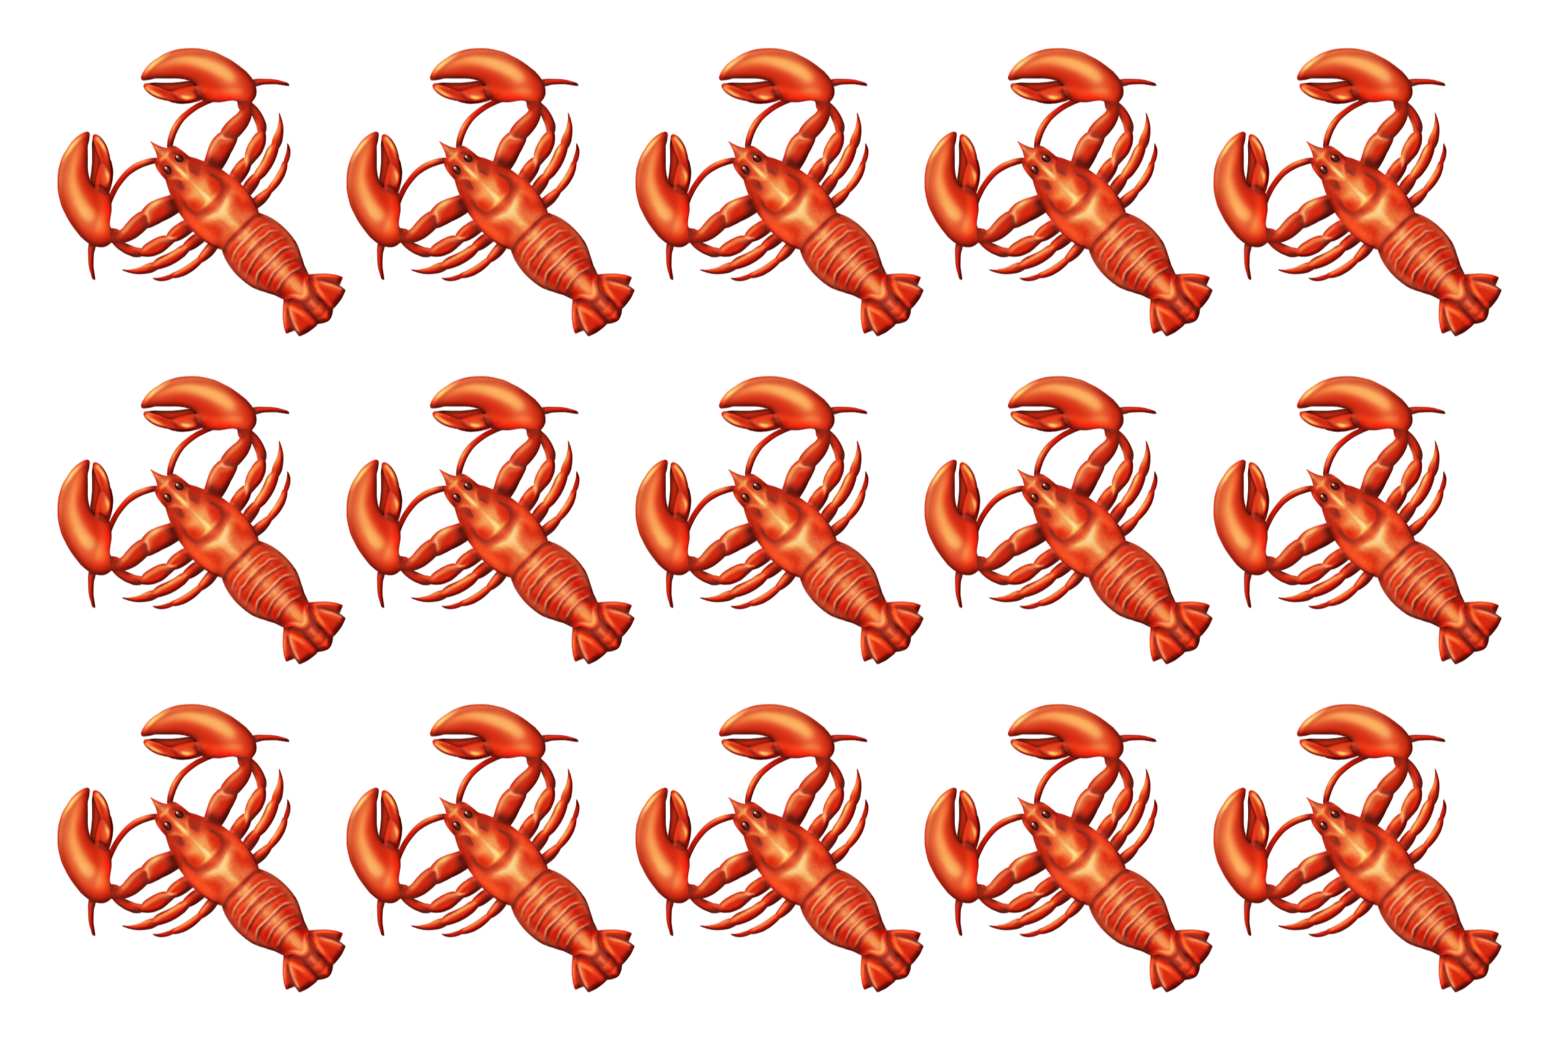 Lobster emojis.